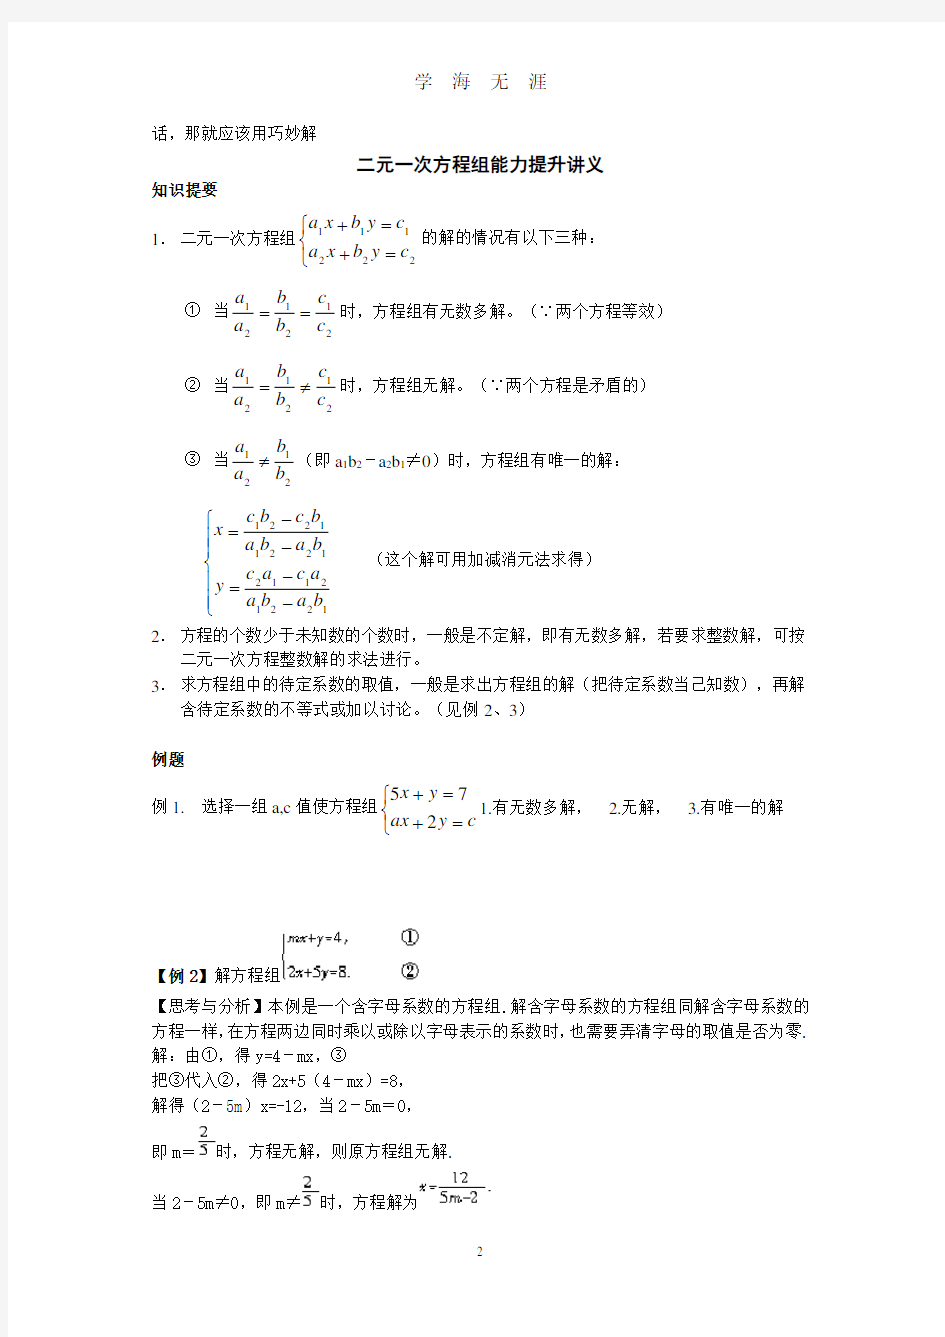 二元一次方程组竞赛题集(答案+解析)(2020年8月整理).pdf